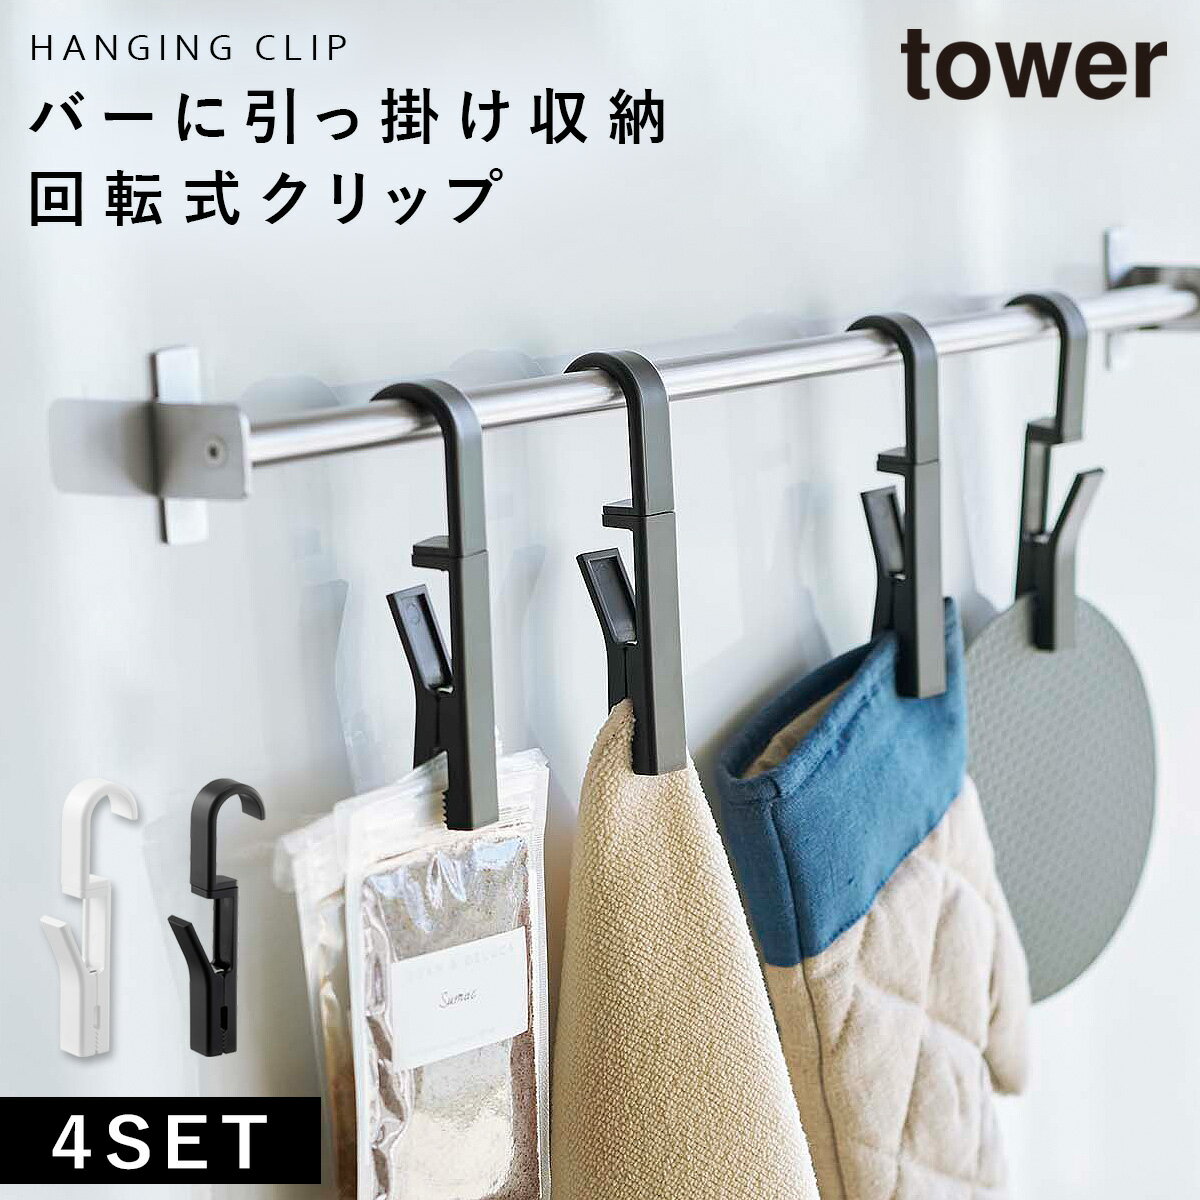 布巾ハンガー tower タワー 山崎実業 キッチン 浮かせる収納 ホワイト ブラック 回転式ハンギングクリップ 4個組